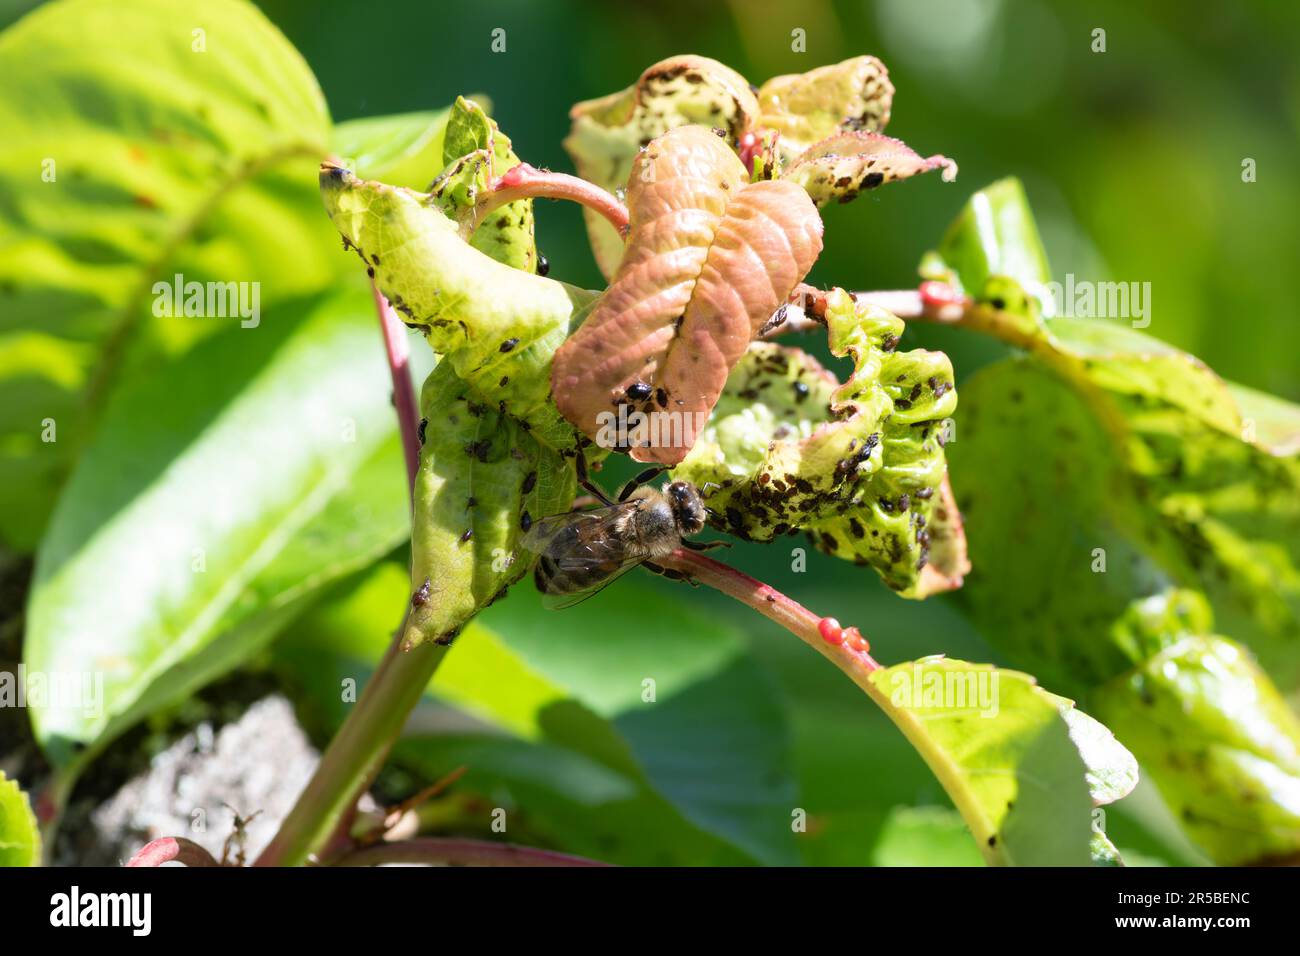 Eine lebhafte Biene und andere Gartenschädlinge, die sich zwischen den üppigen Kirschbäumen herumtreiben, Eindringlinge auf Kirschbaumblättern, Südfrankreich Stockfoto